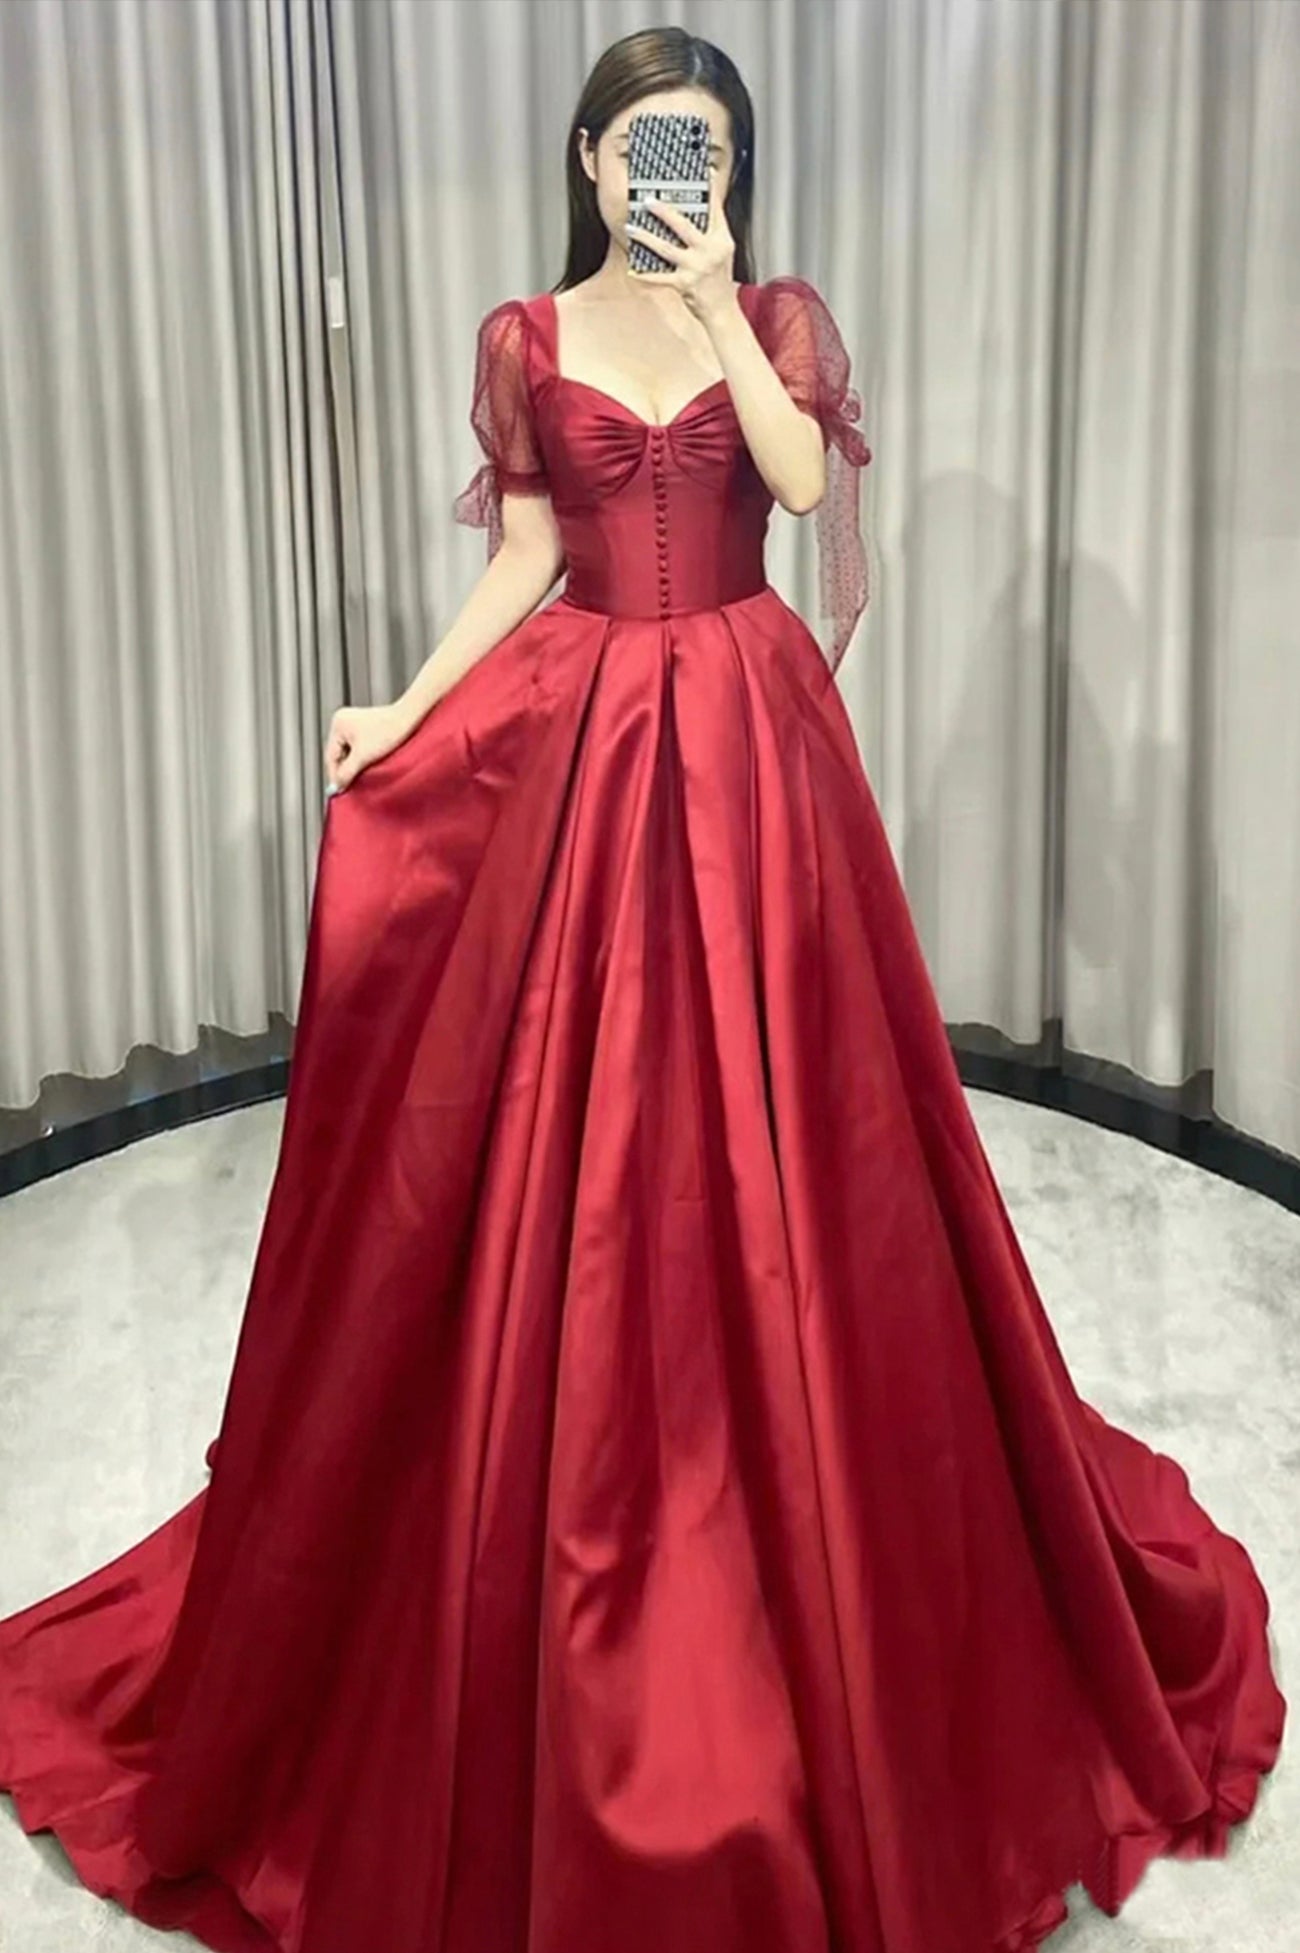 Burgundy Satin Long Prom Dress, A-Line Short Sleeve Evening Dress